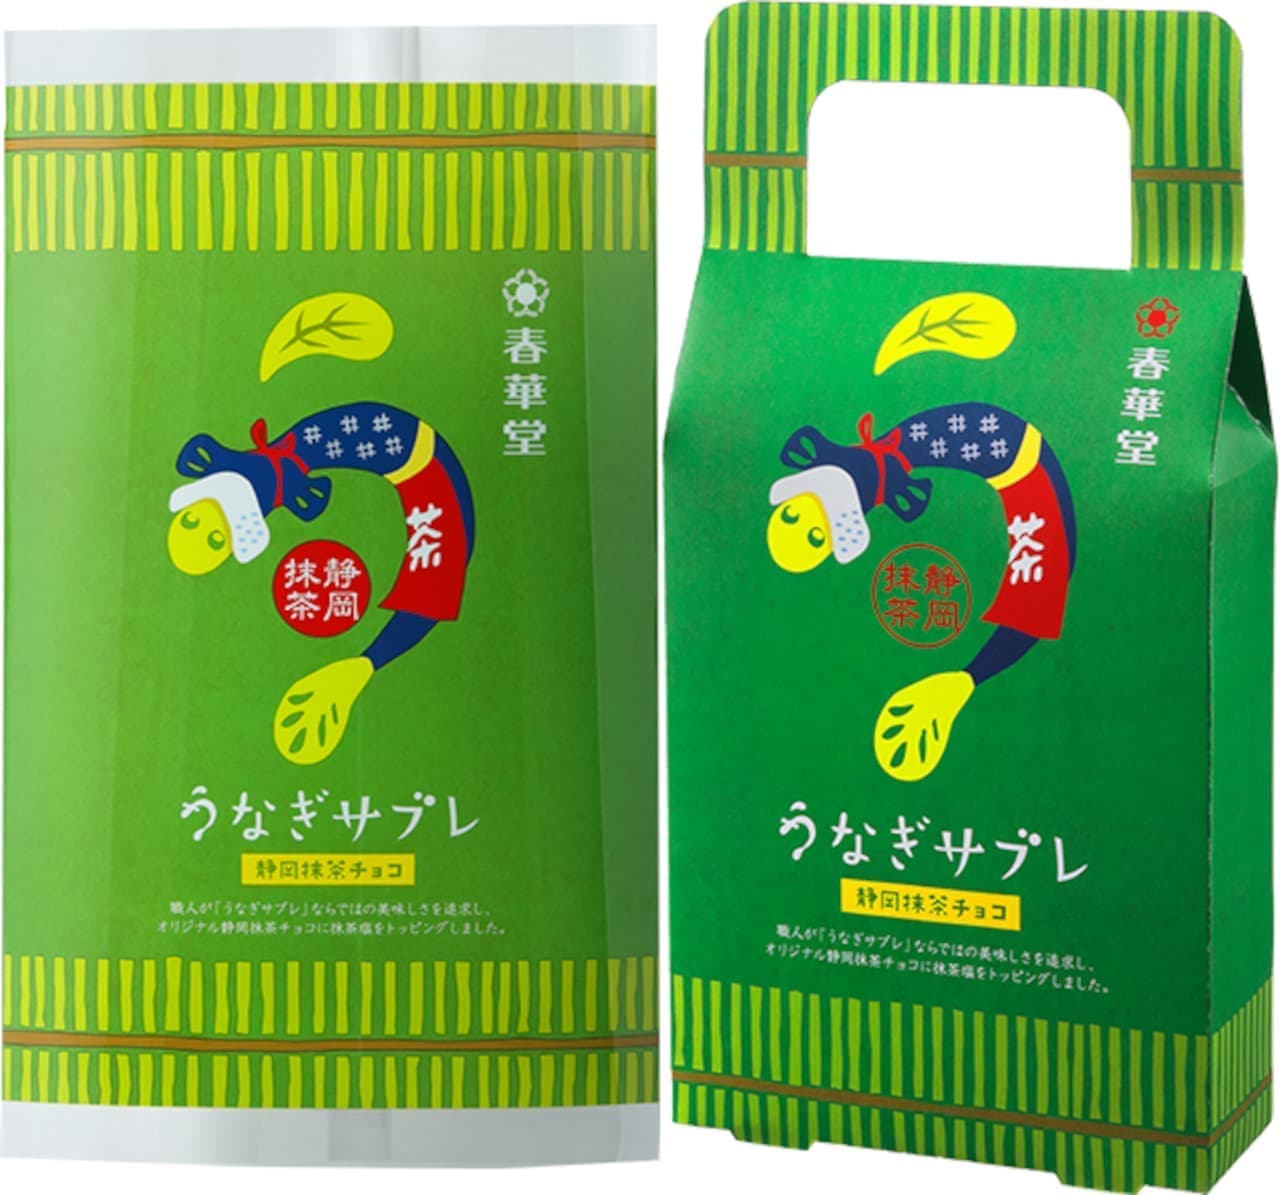 Shunkado "Eel Sablet Shizuoka Matcha Chocolate